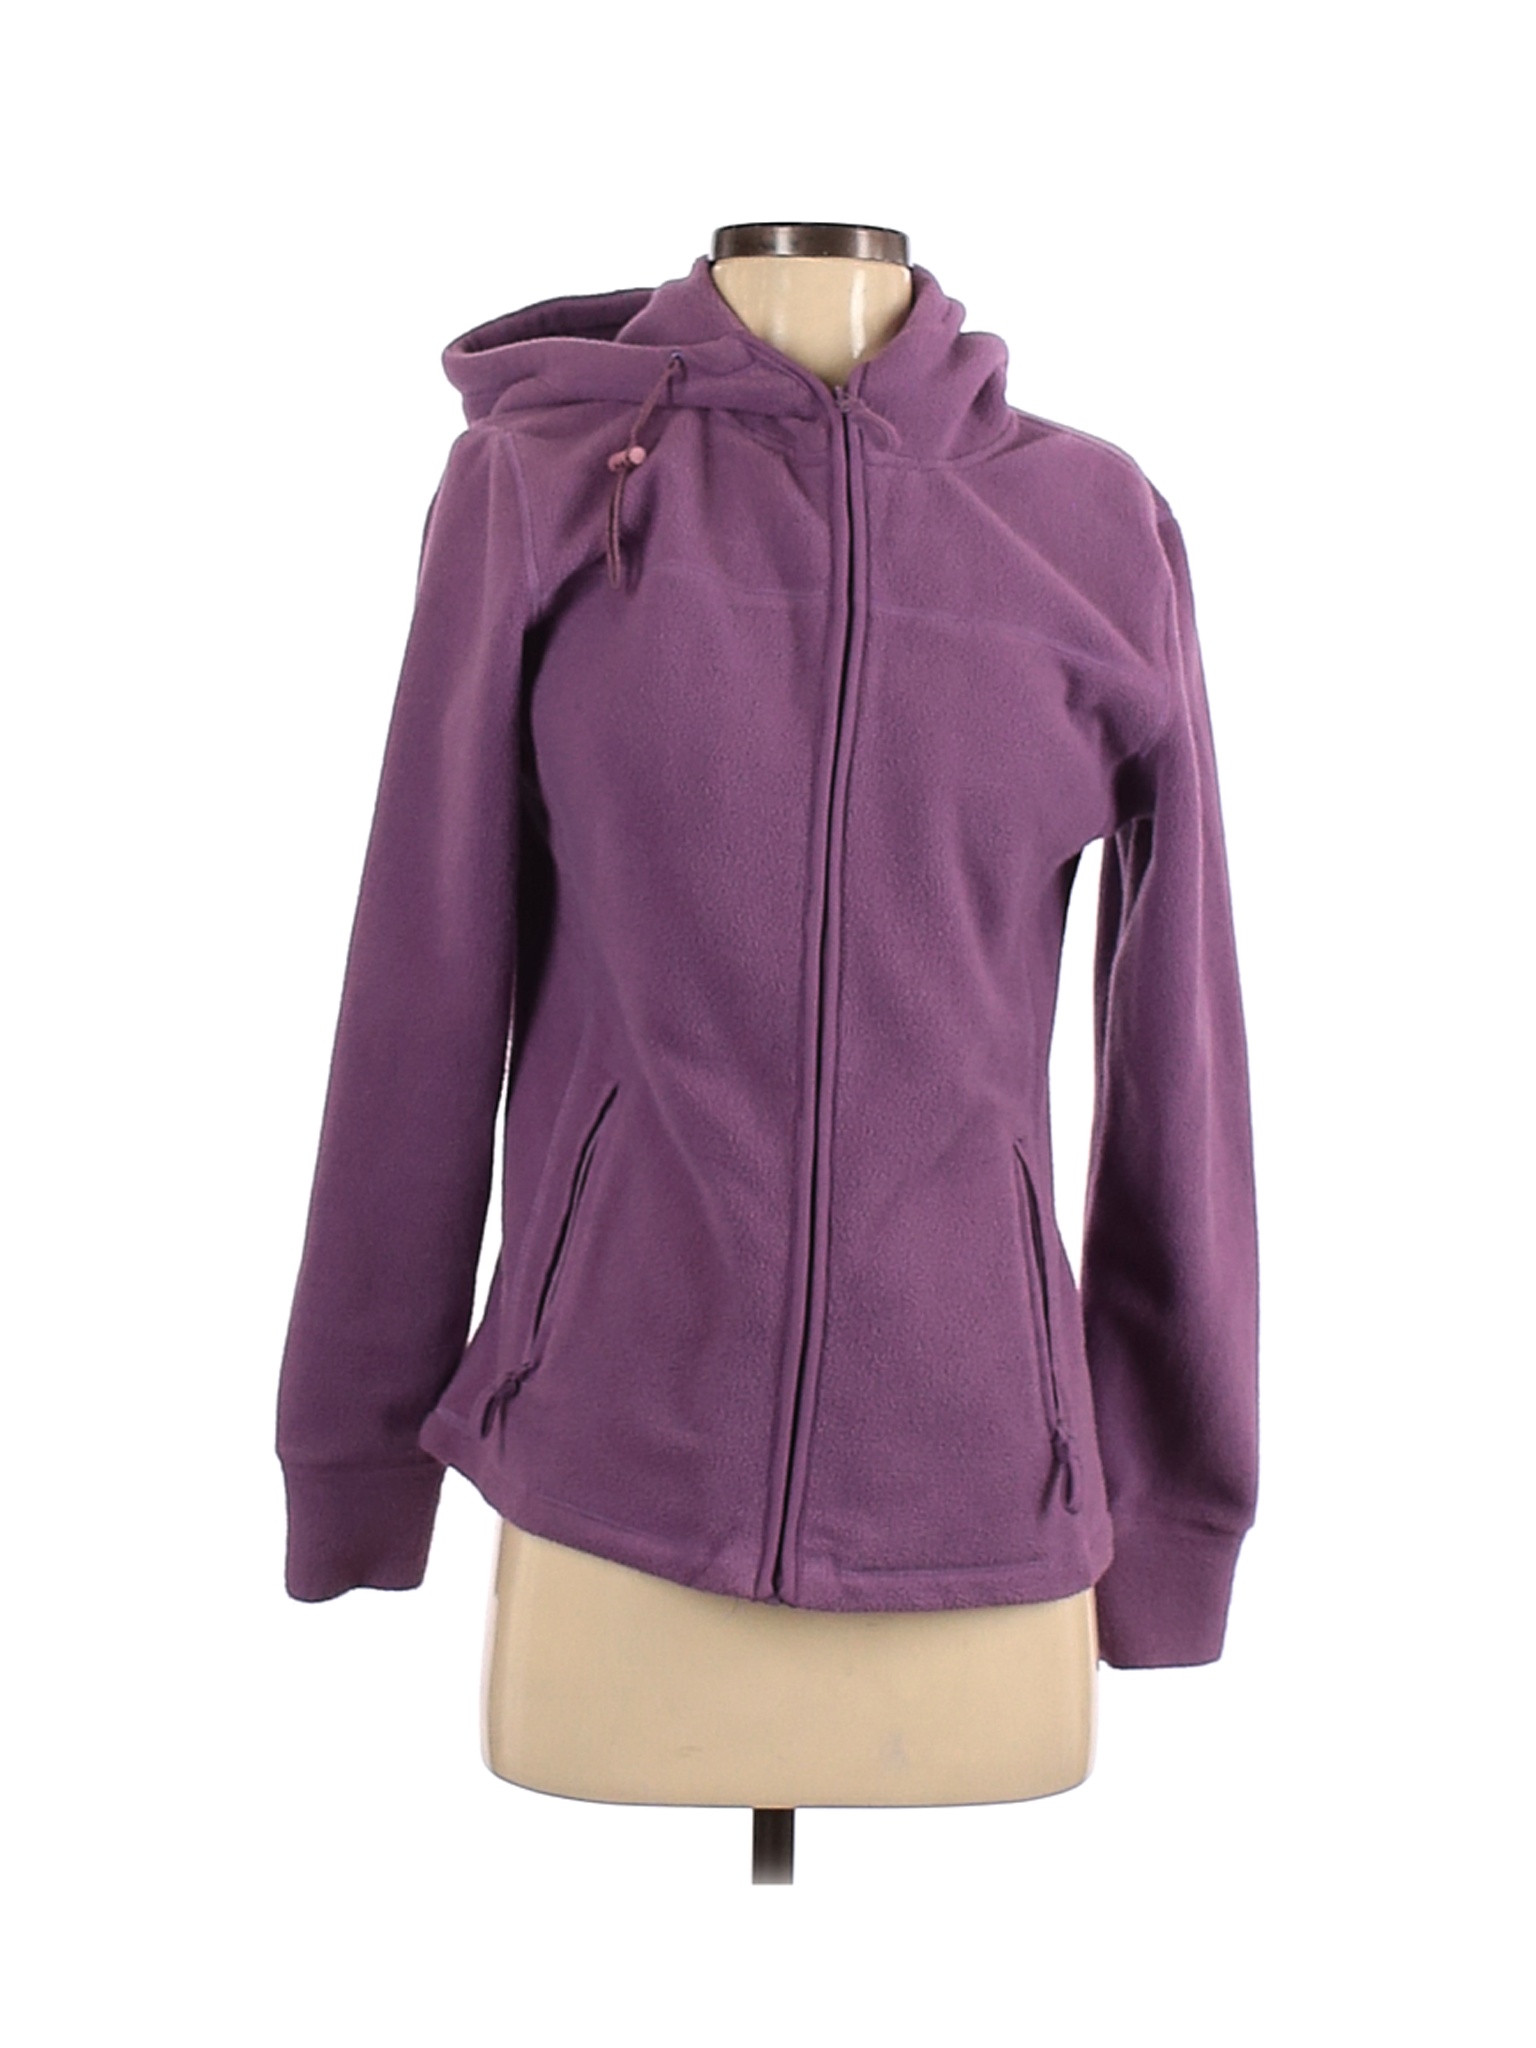 My Wear Woman Women Purple Fleece XS | eBay